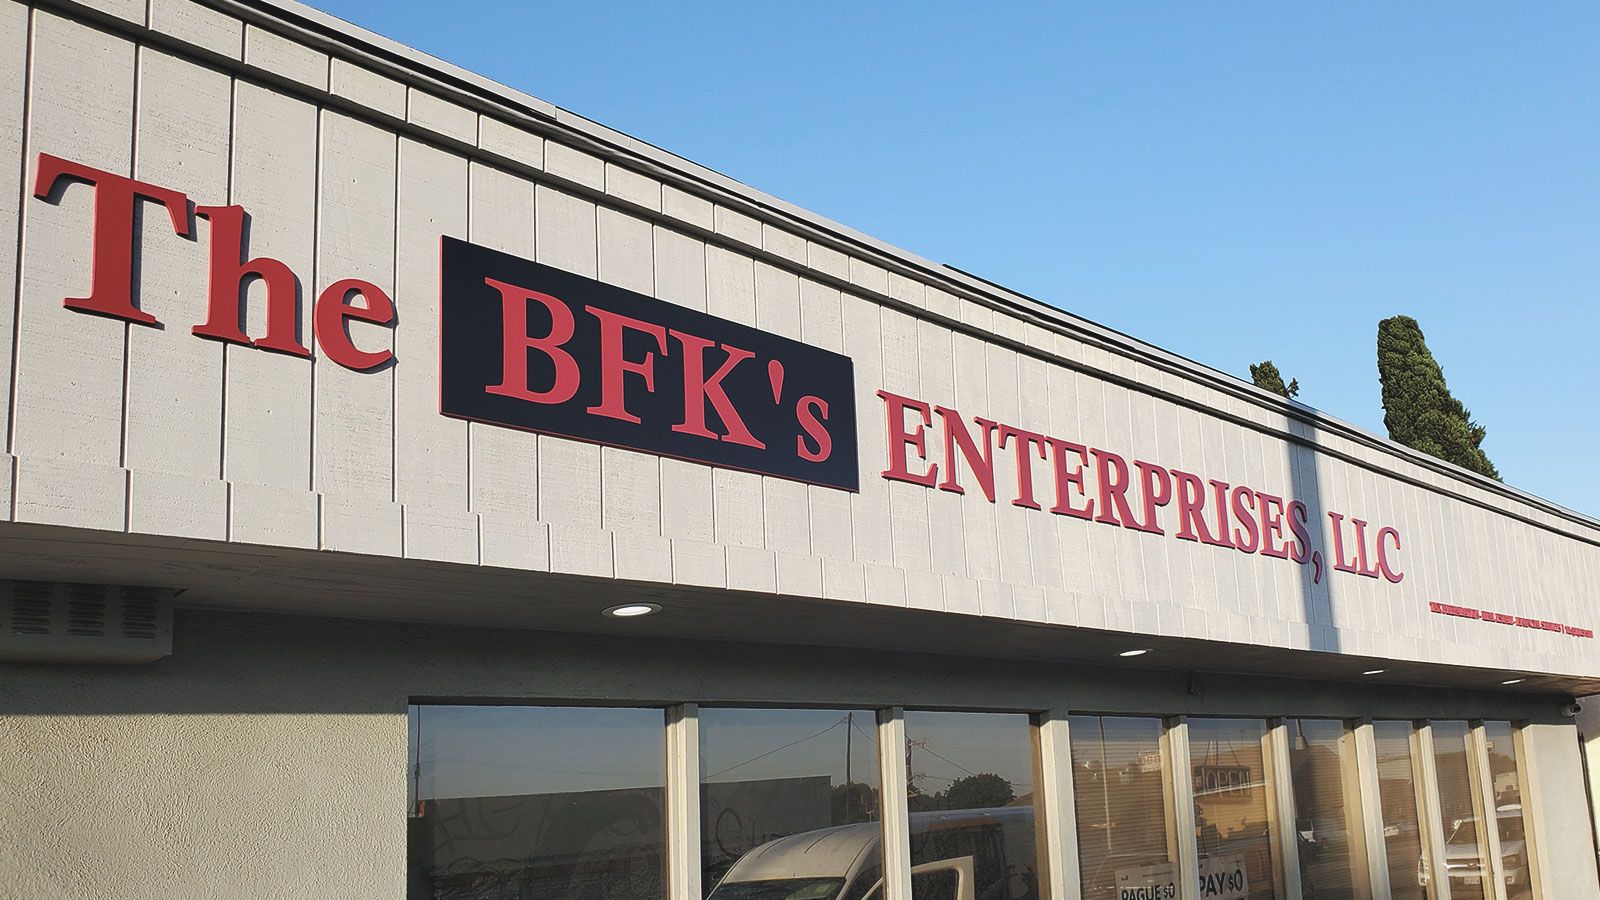 bfk's enterprises building sign